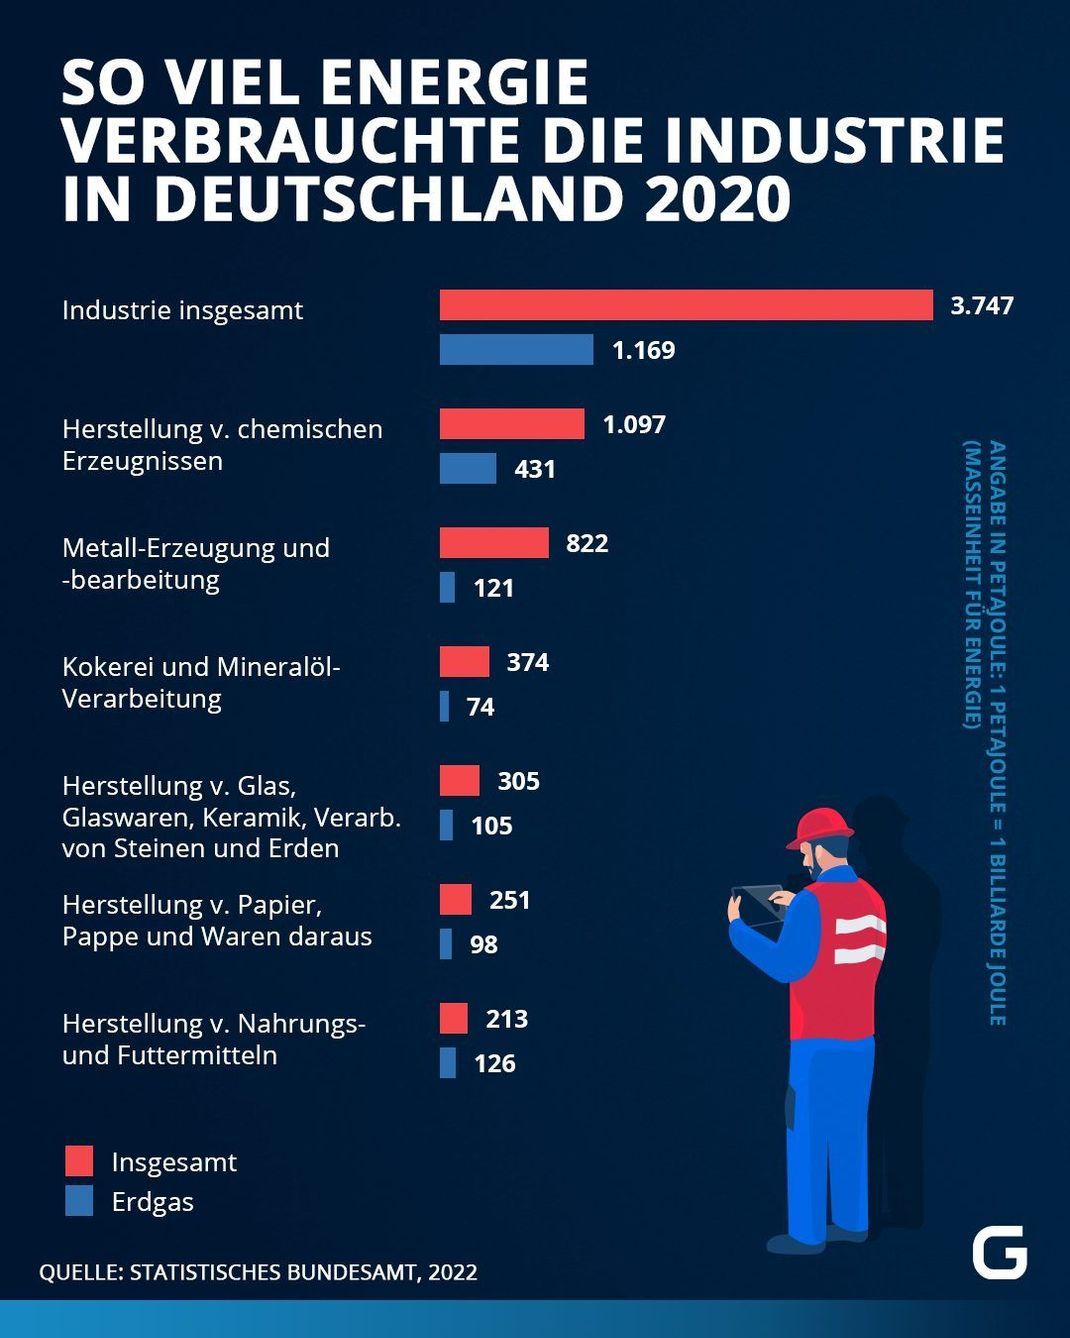 So viel Energie verbrauchte die Industrie in Deutschland 2020 insgesamt und so hoch war der Anteil an Erdgas. 